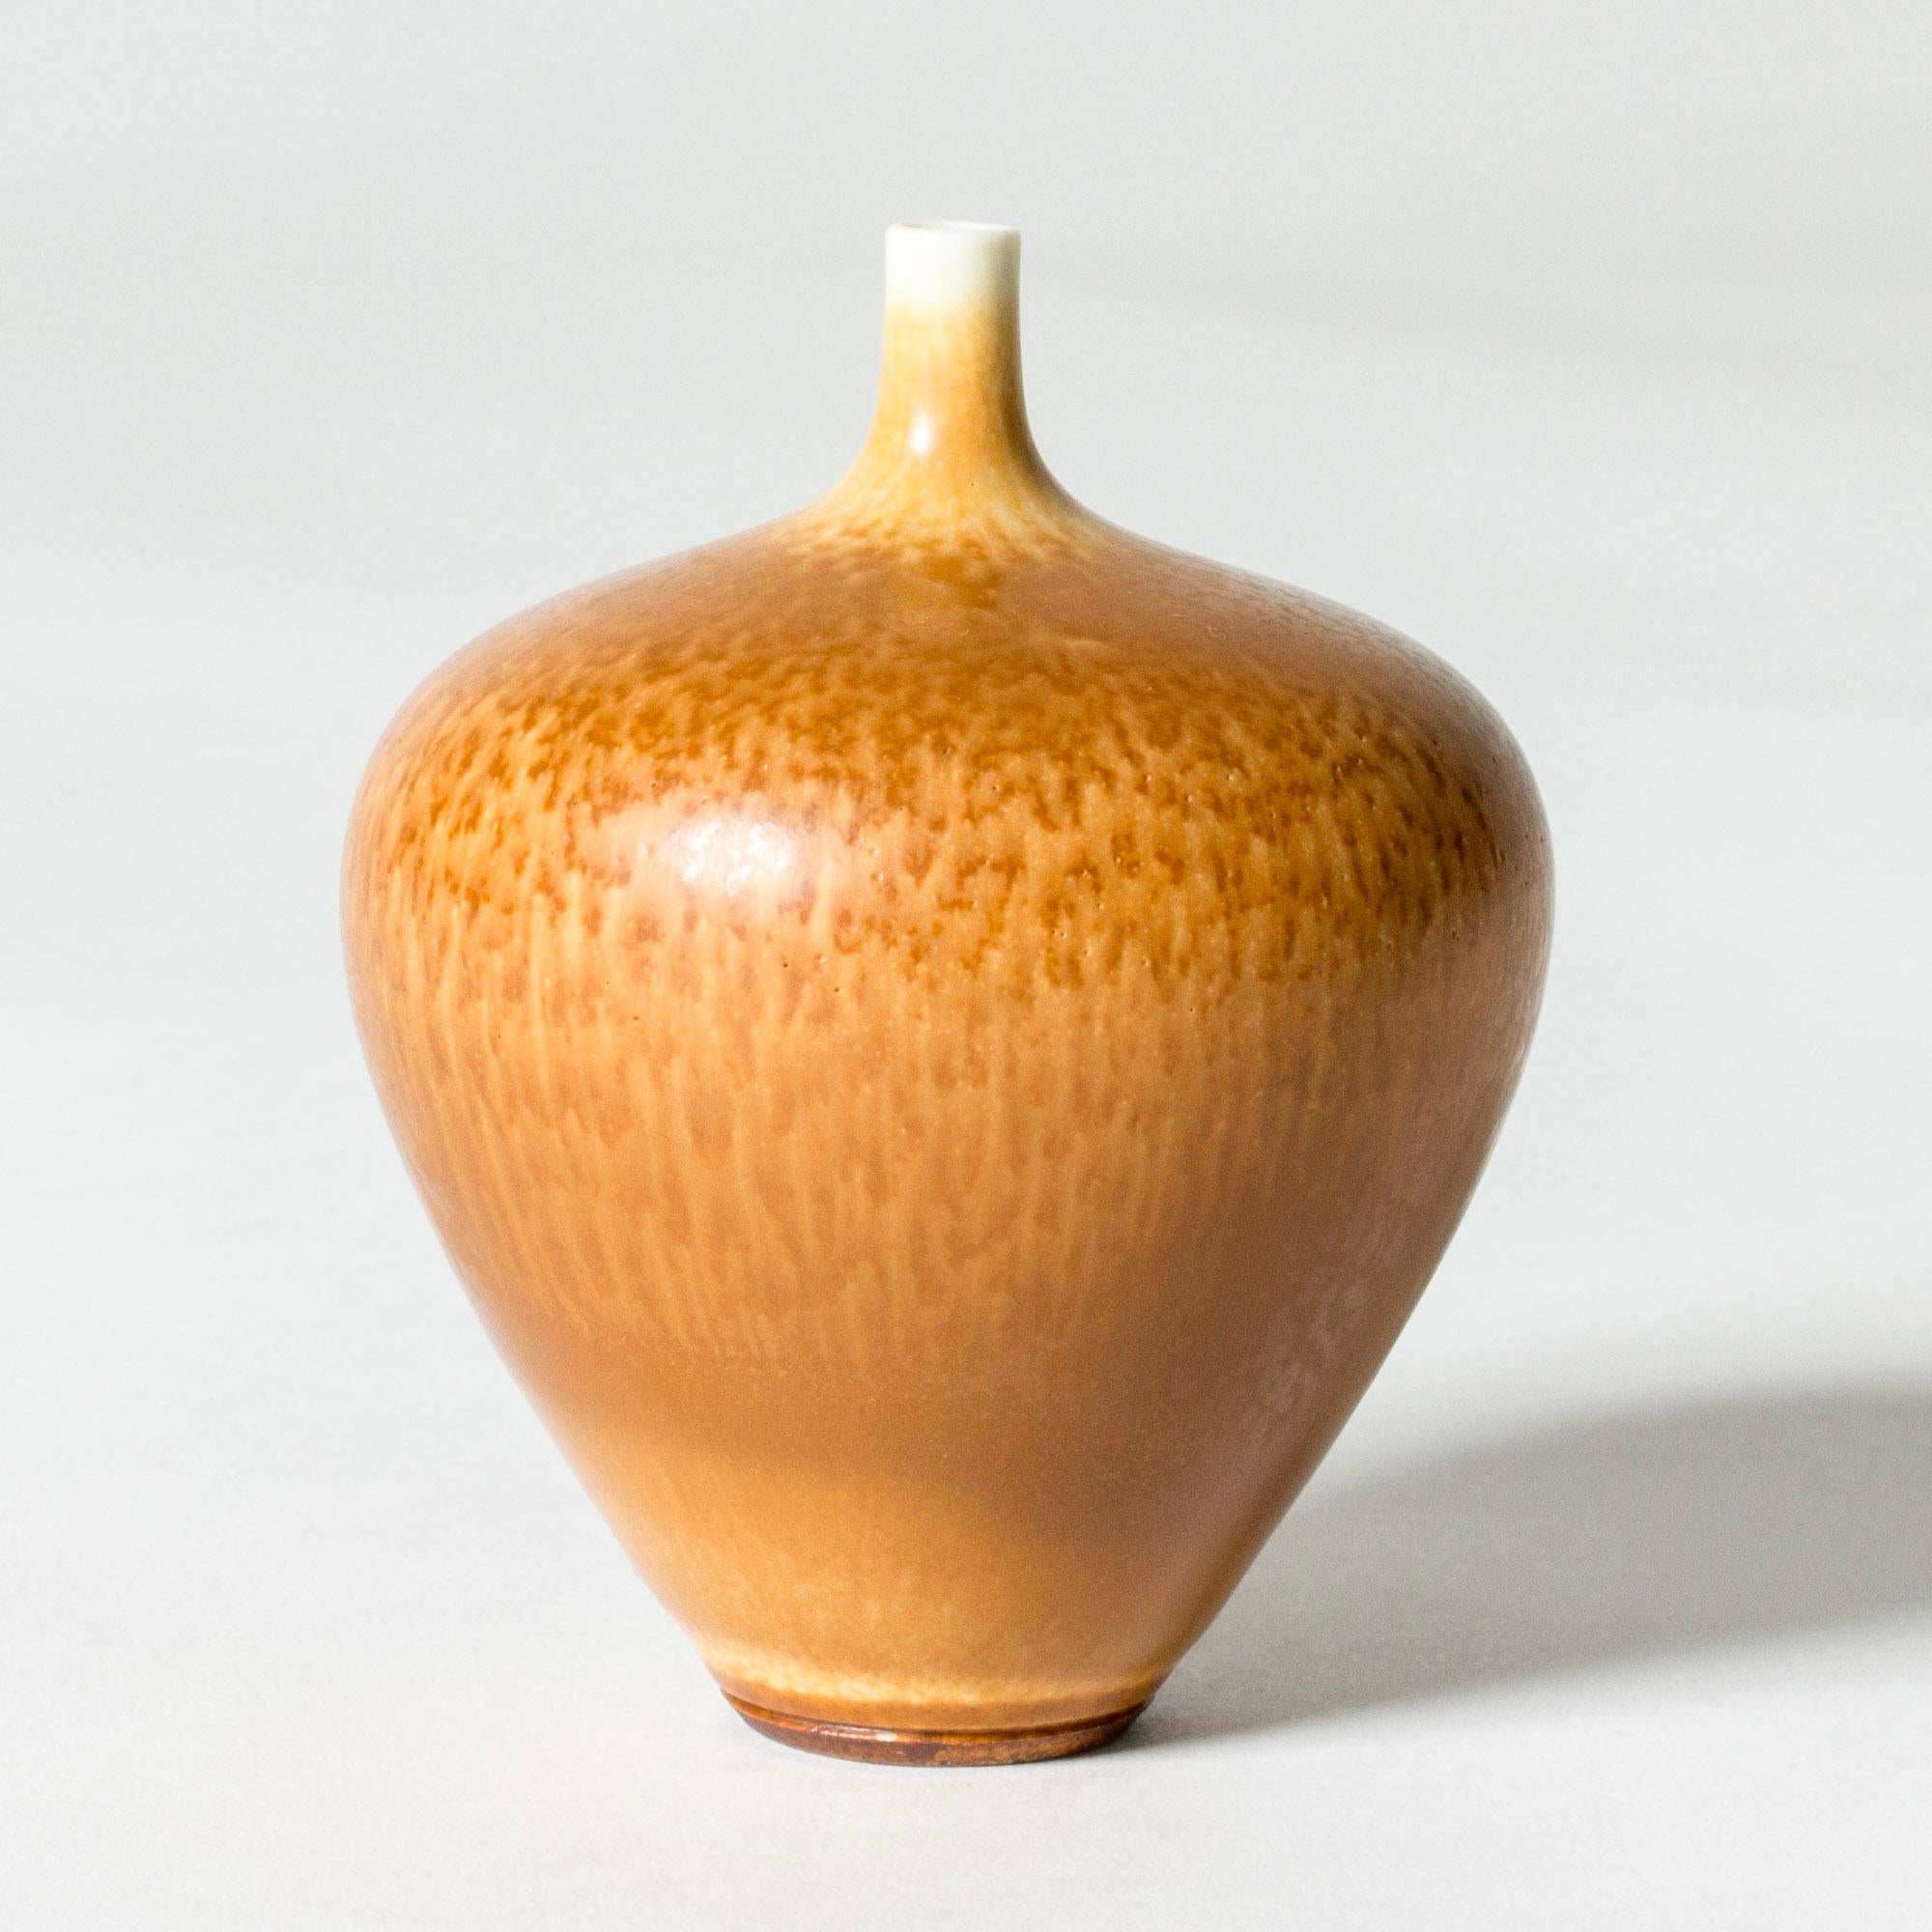 Hübsche Miniatur-Steinzeugvase von Berndt Friberg, in einer großzügigen Apfelform mit dünnem Hals. Verziert mit warmer ockerfarbener Hasenfellglasur.

Berndt Friberg war ein schwedischer Keramiker, der für seine Steinzeugvasen und -gefäße für